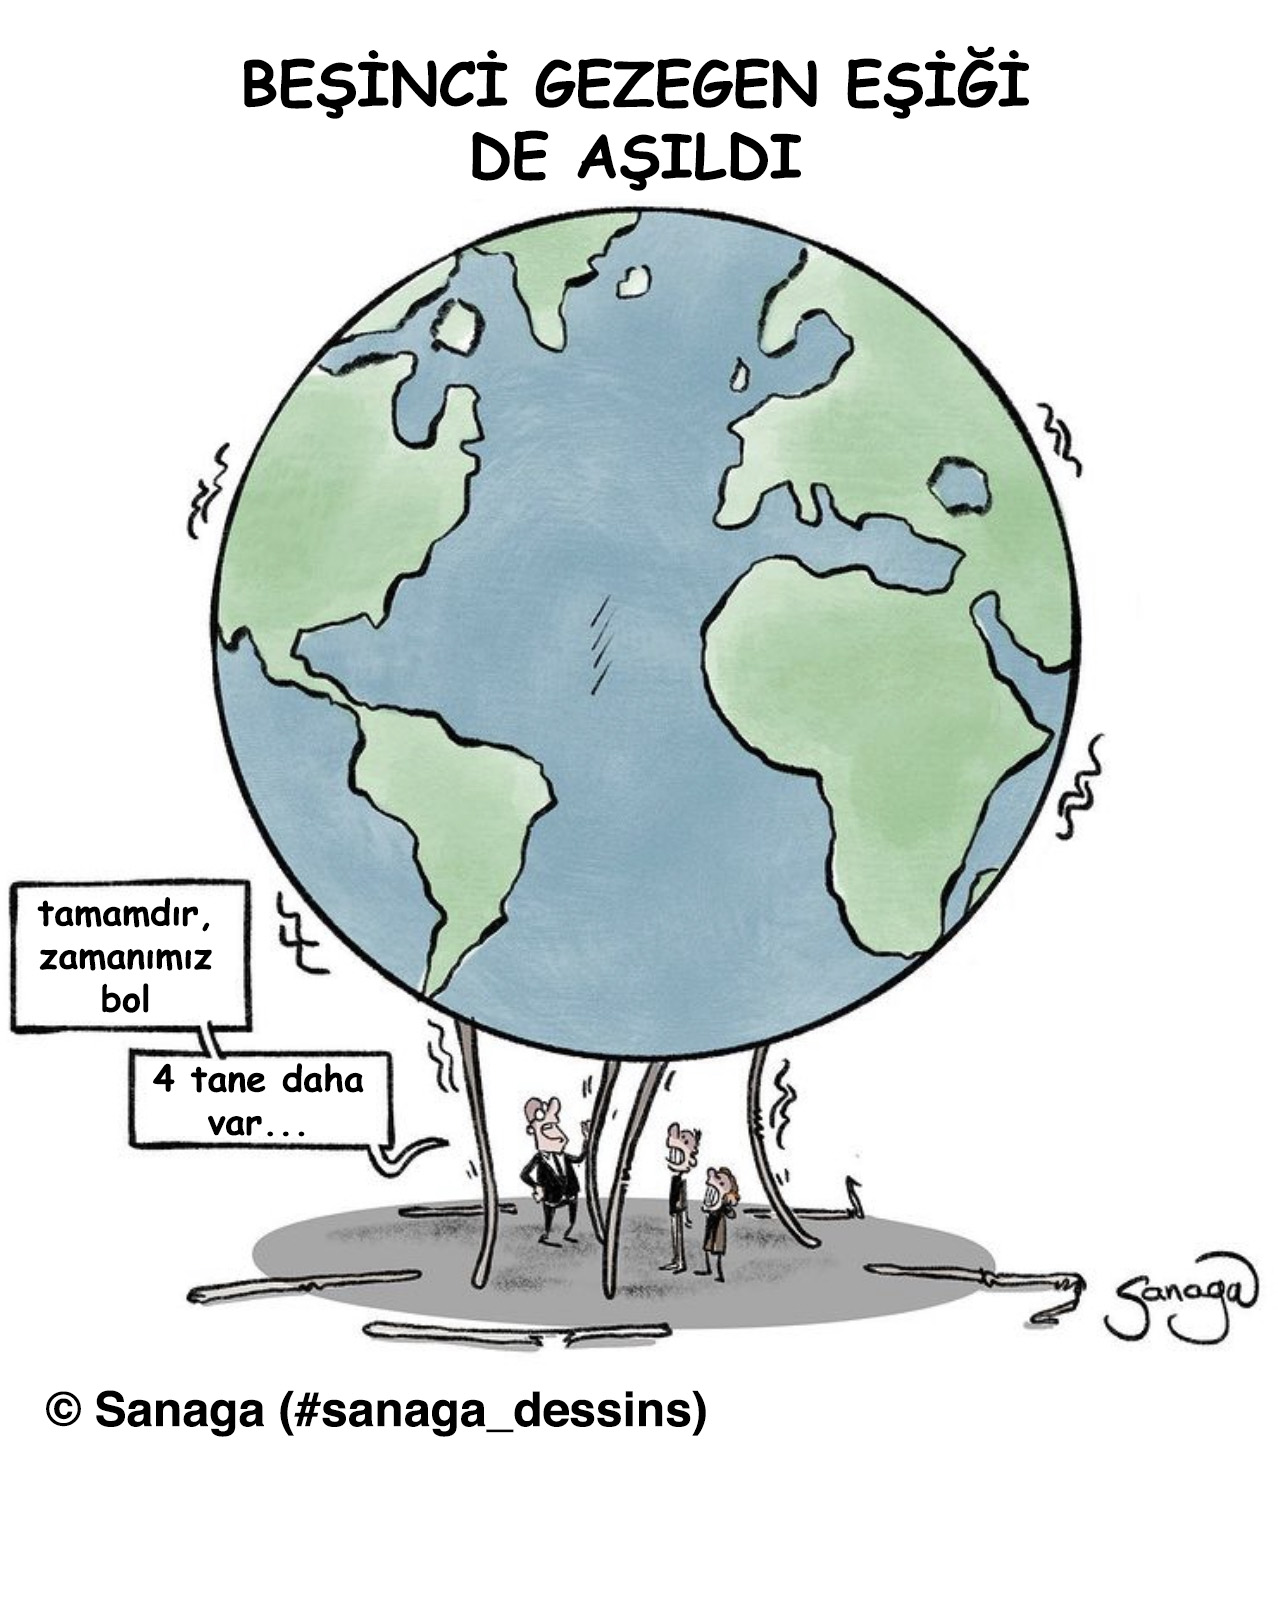 Sanaga'nın karikatürü